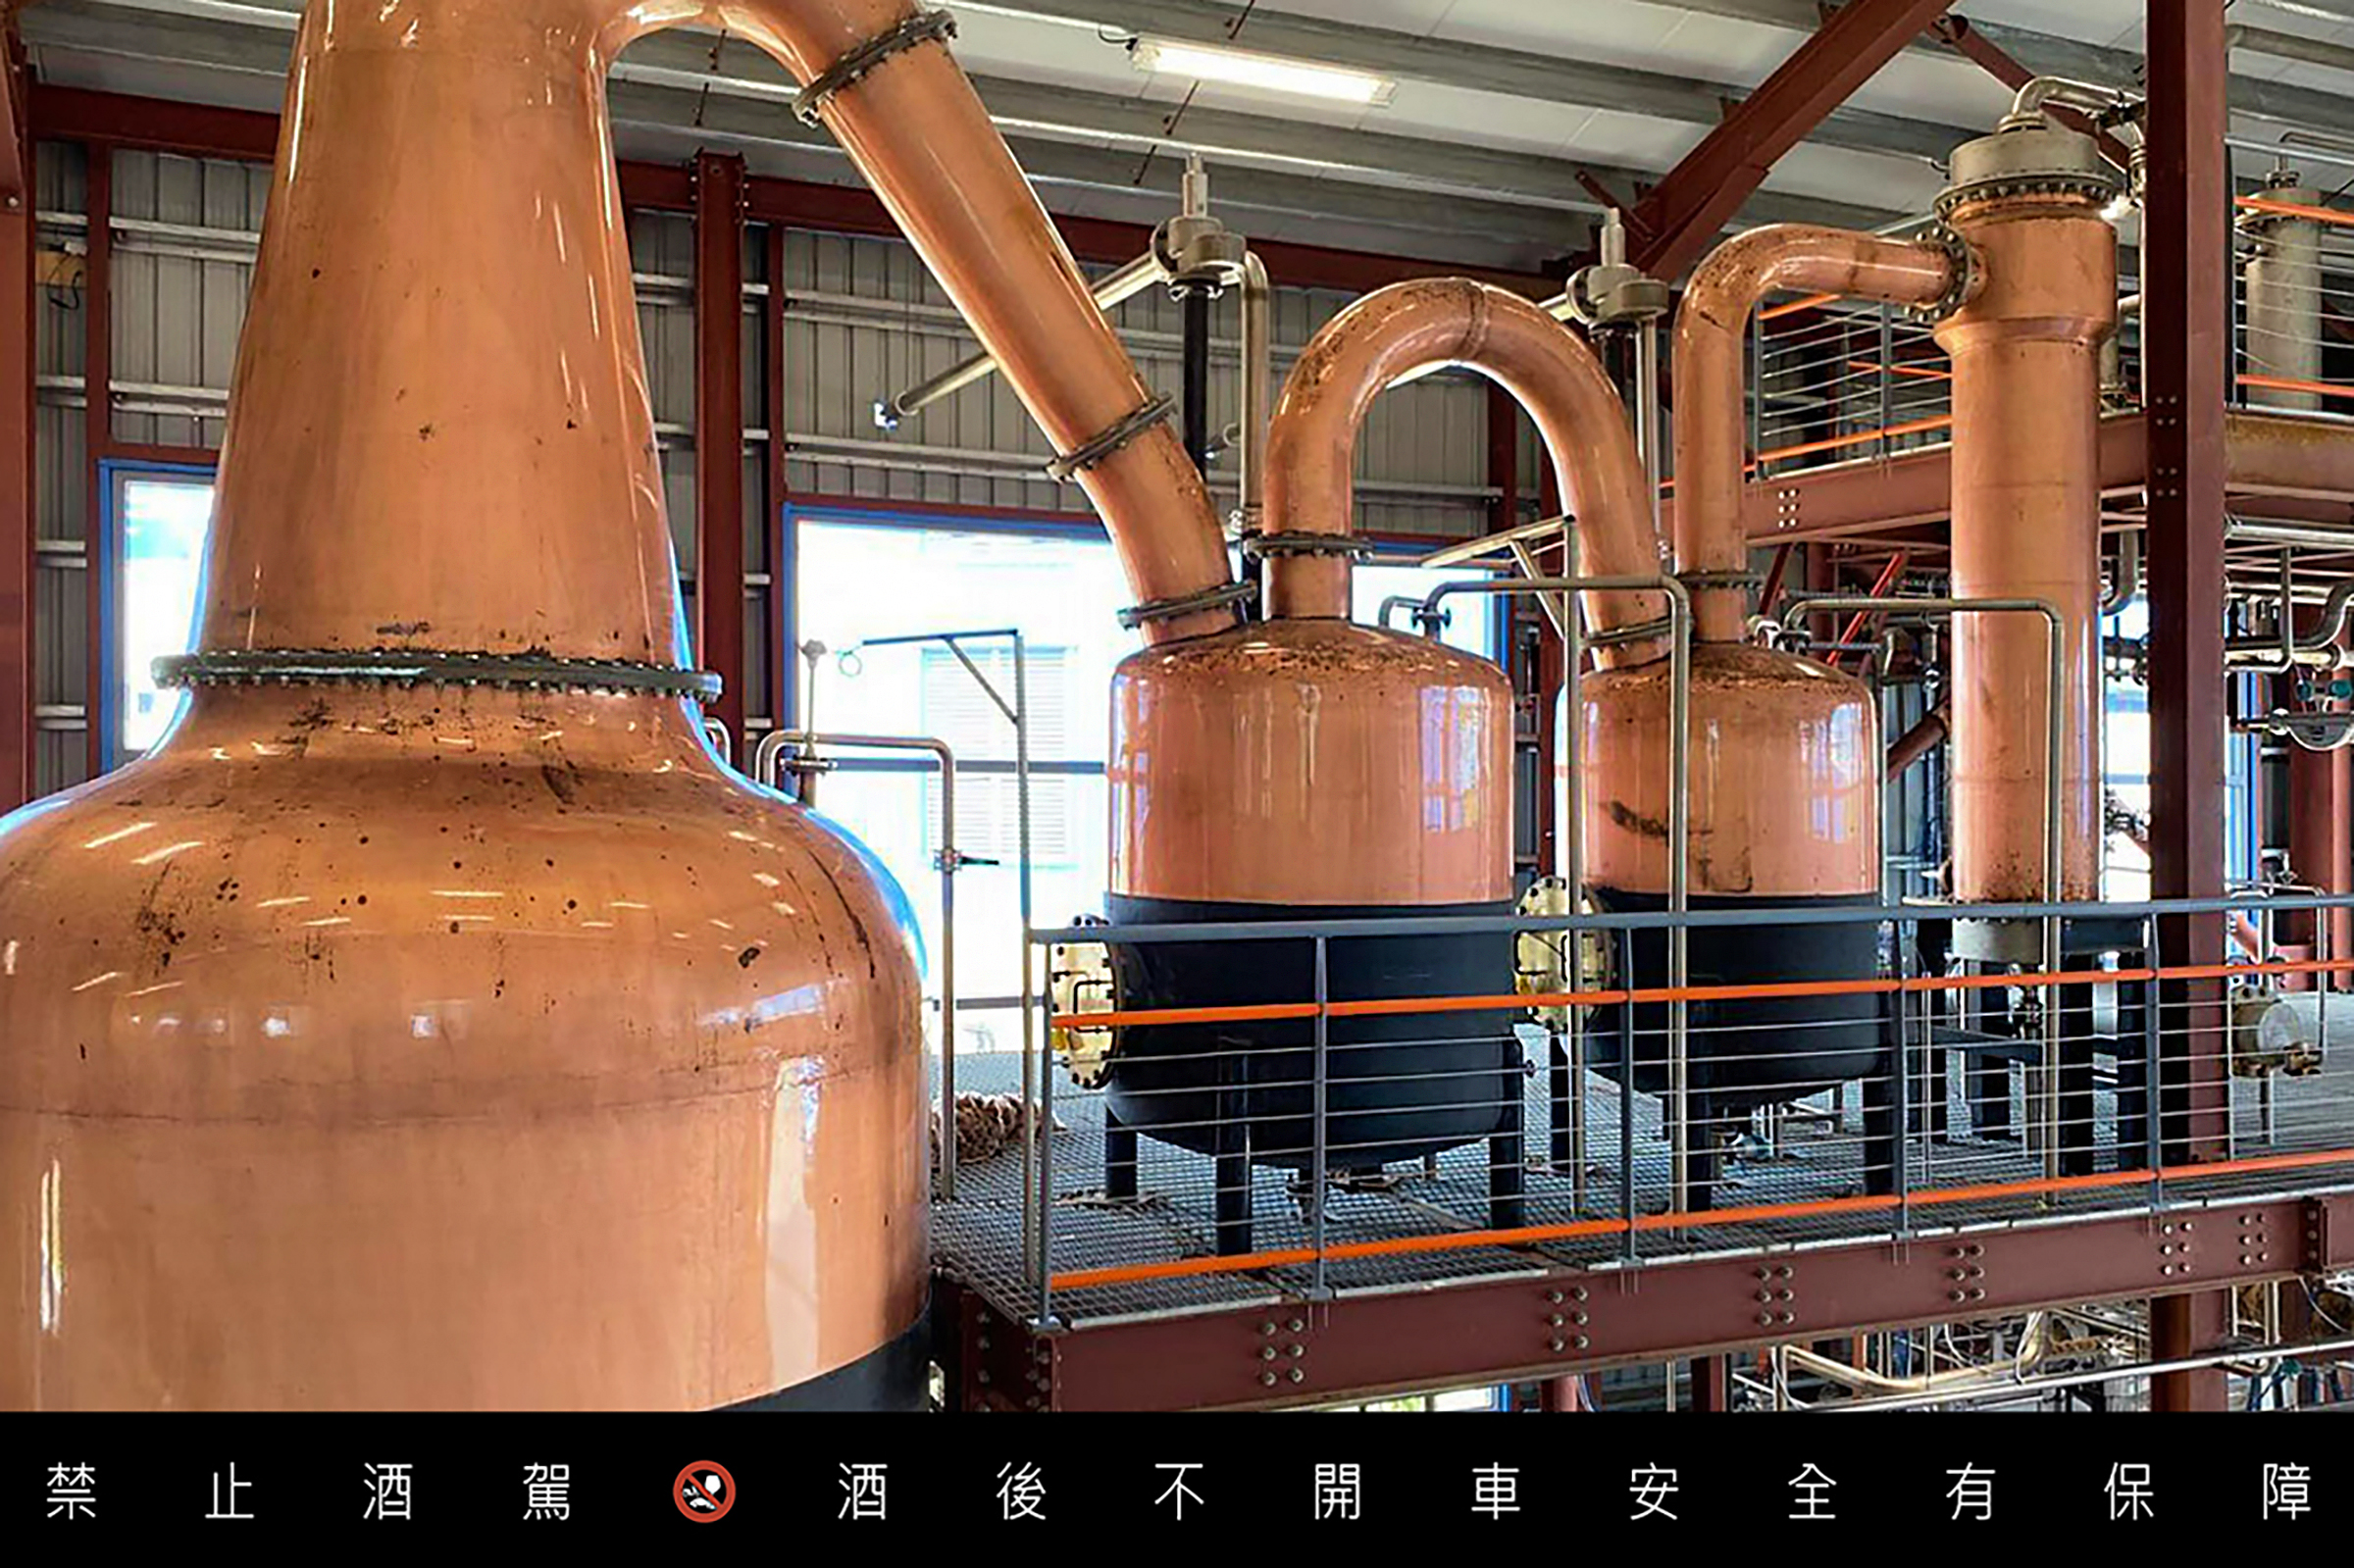 《Renegade 革命家蘭姆酒》全球第一座農業型蘭姆酒廠